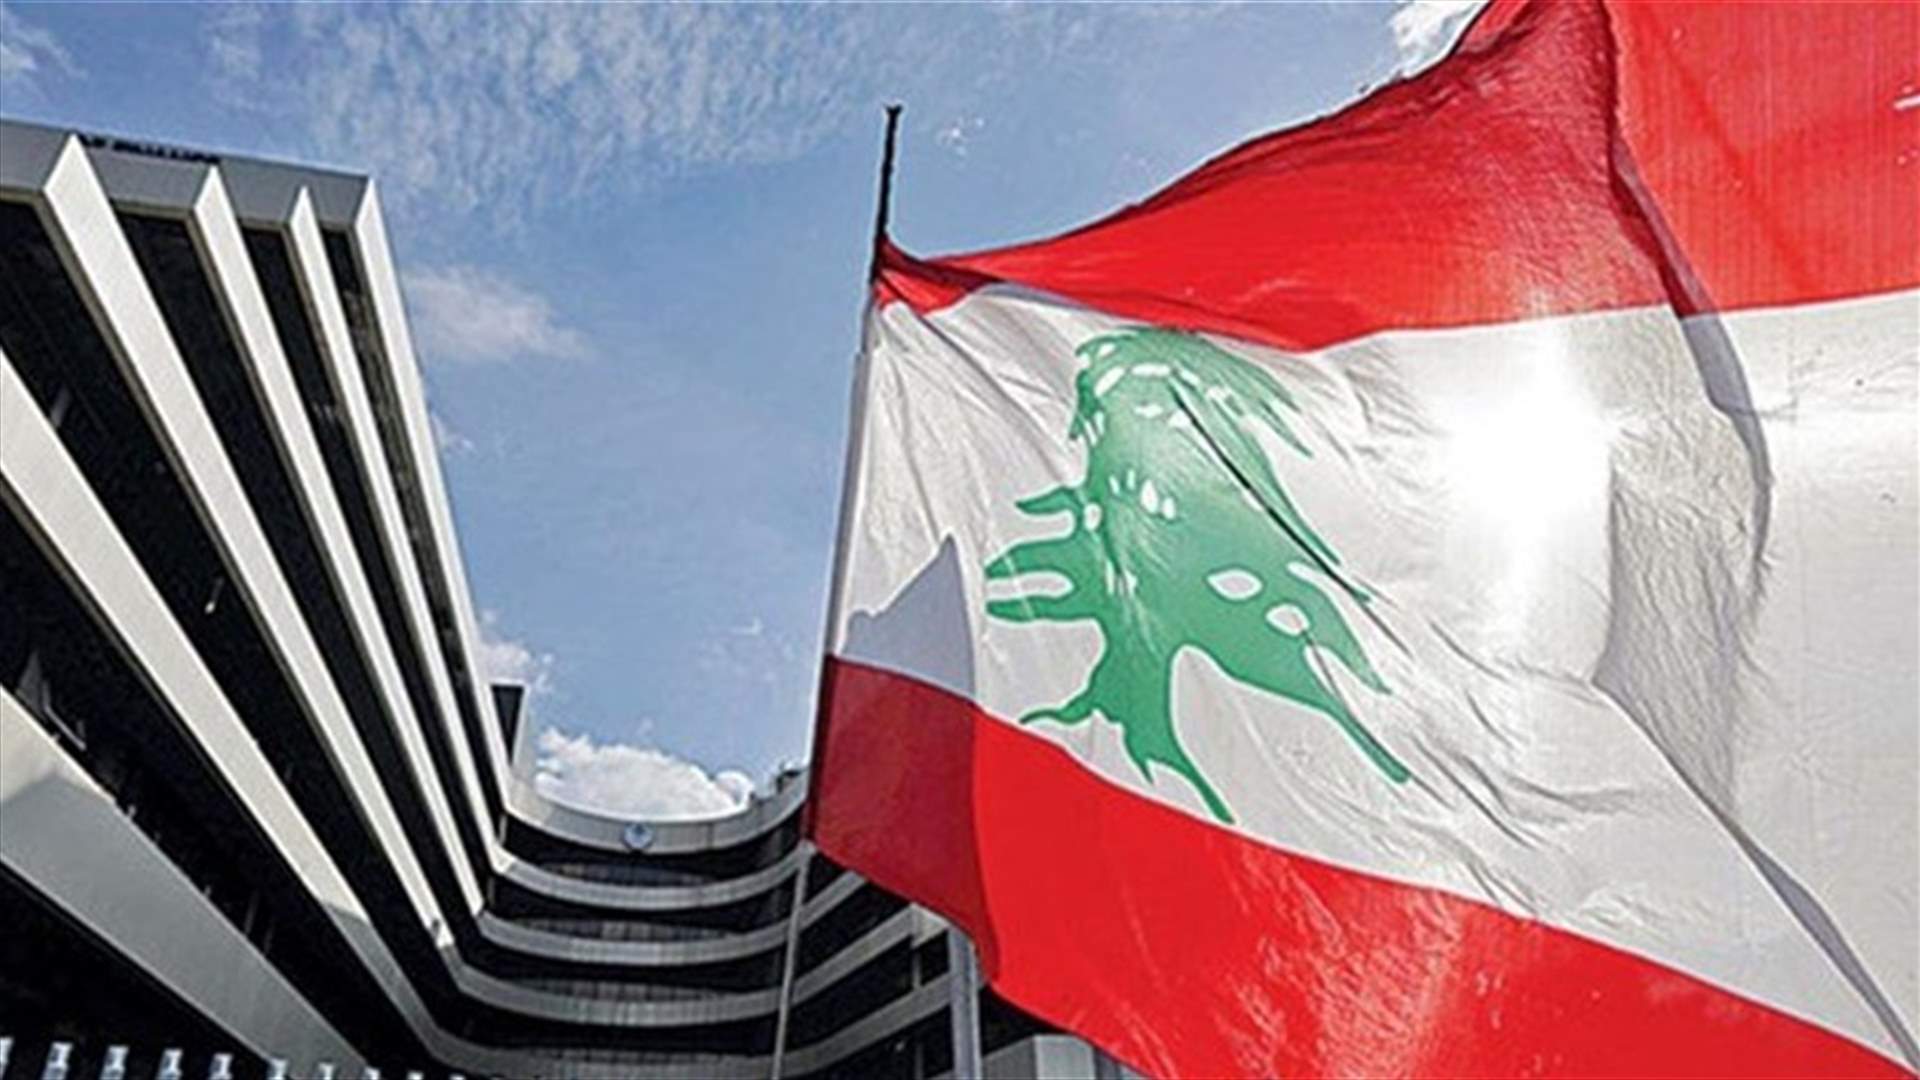 المستشار الاقتصادي لميقاتي يكشف عن حصّة لبنان من صندوق النقد.. &quot;مشكلة لبنان هي مشكلة هيكلية بالاقتصاد&quot;